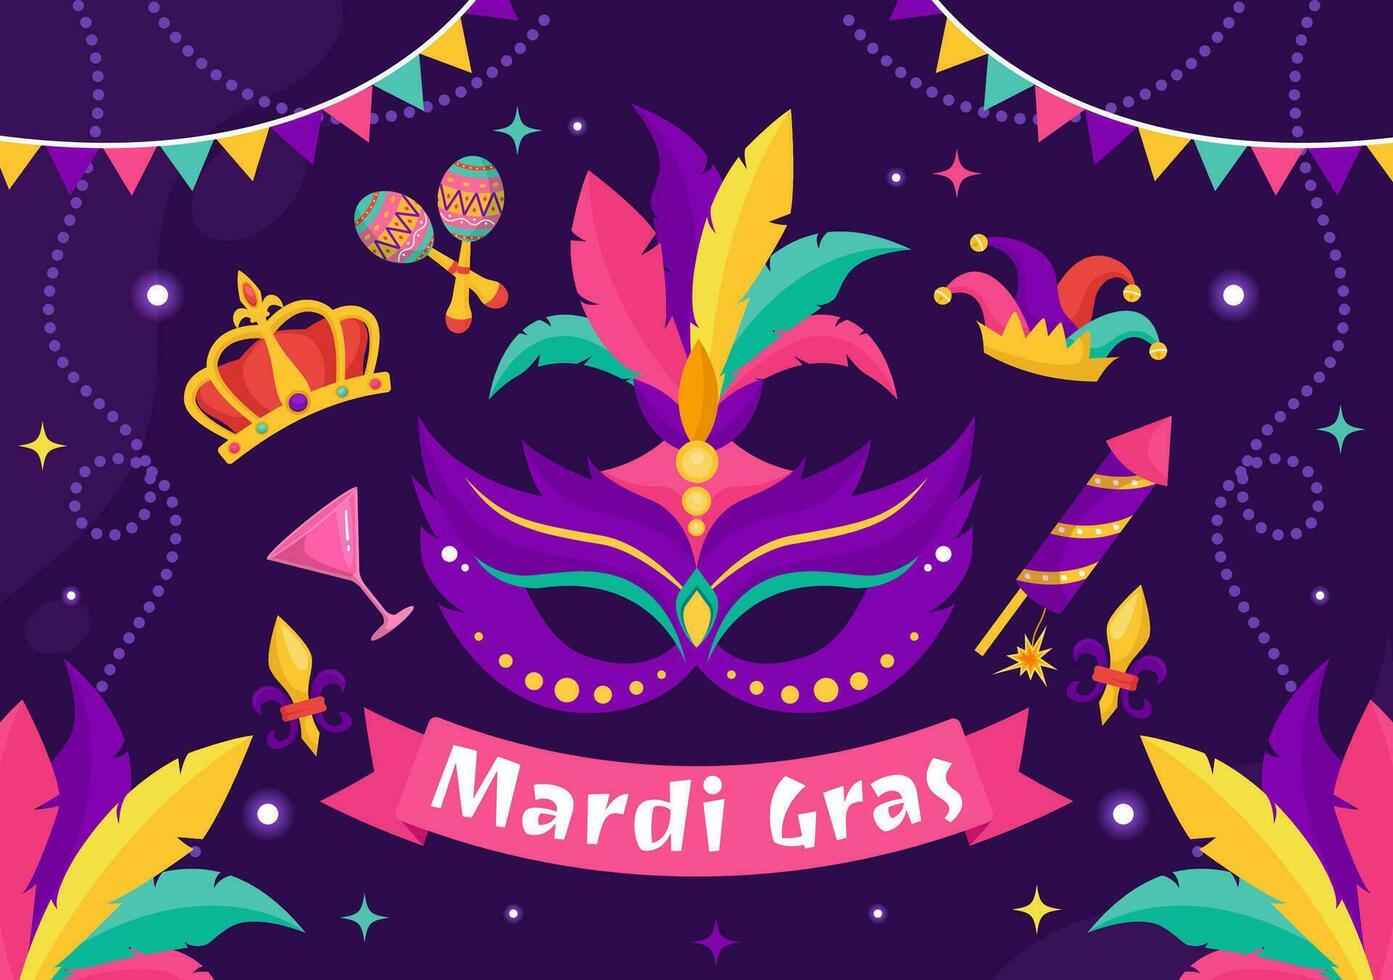 mardi gras karneval vektor illustration. översättning är franska för fett tisdag. festival med masker, maracas, gitarr och fjädrar på lila bakgrund